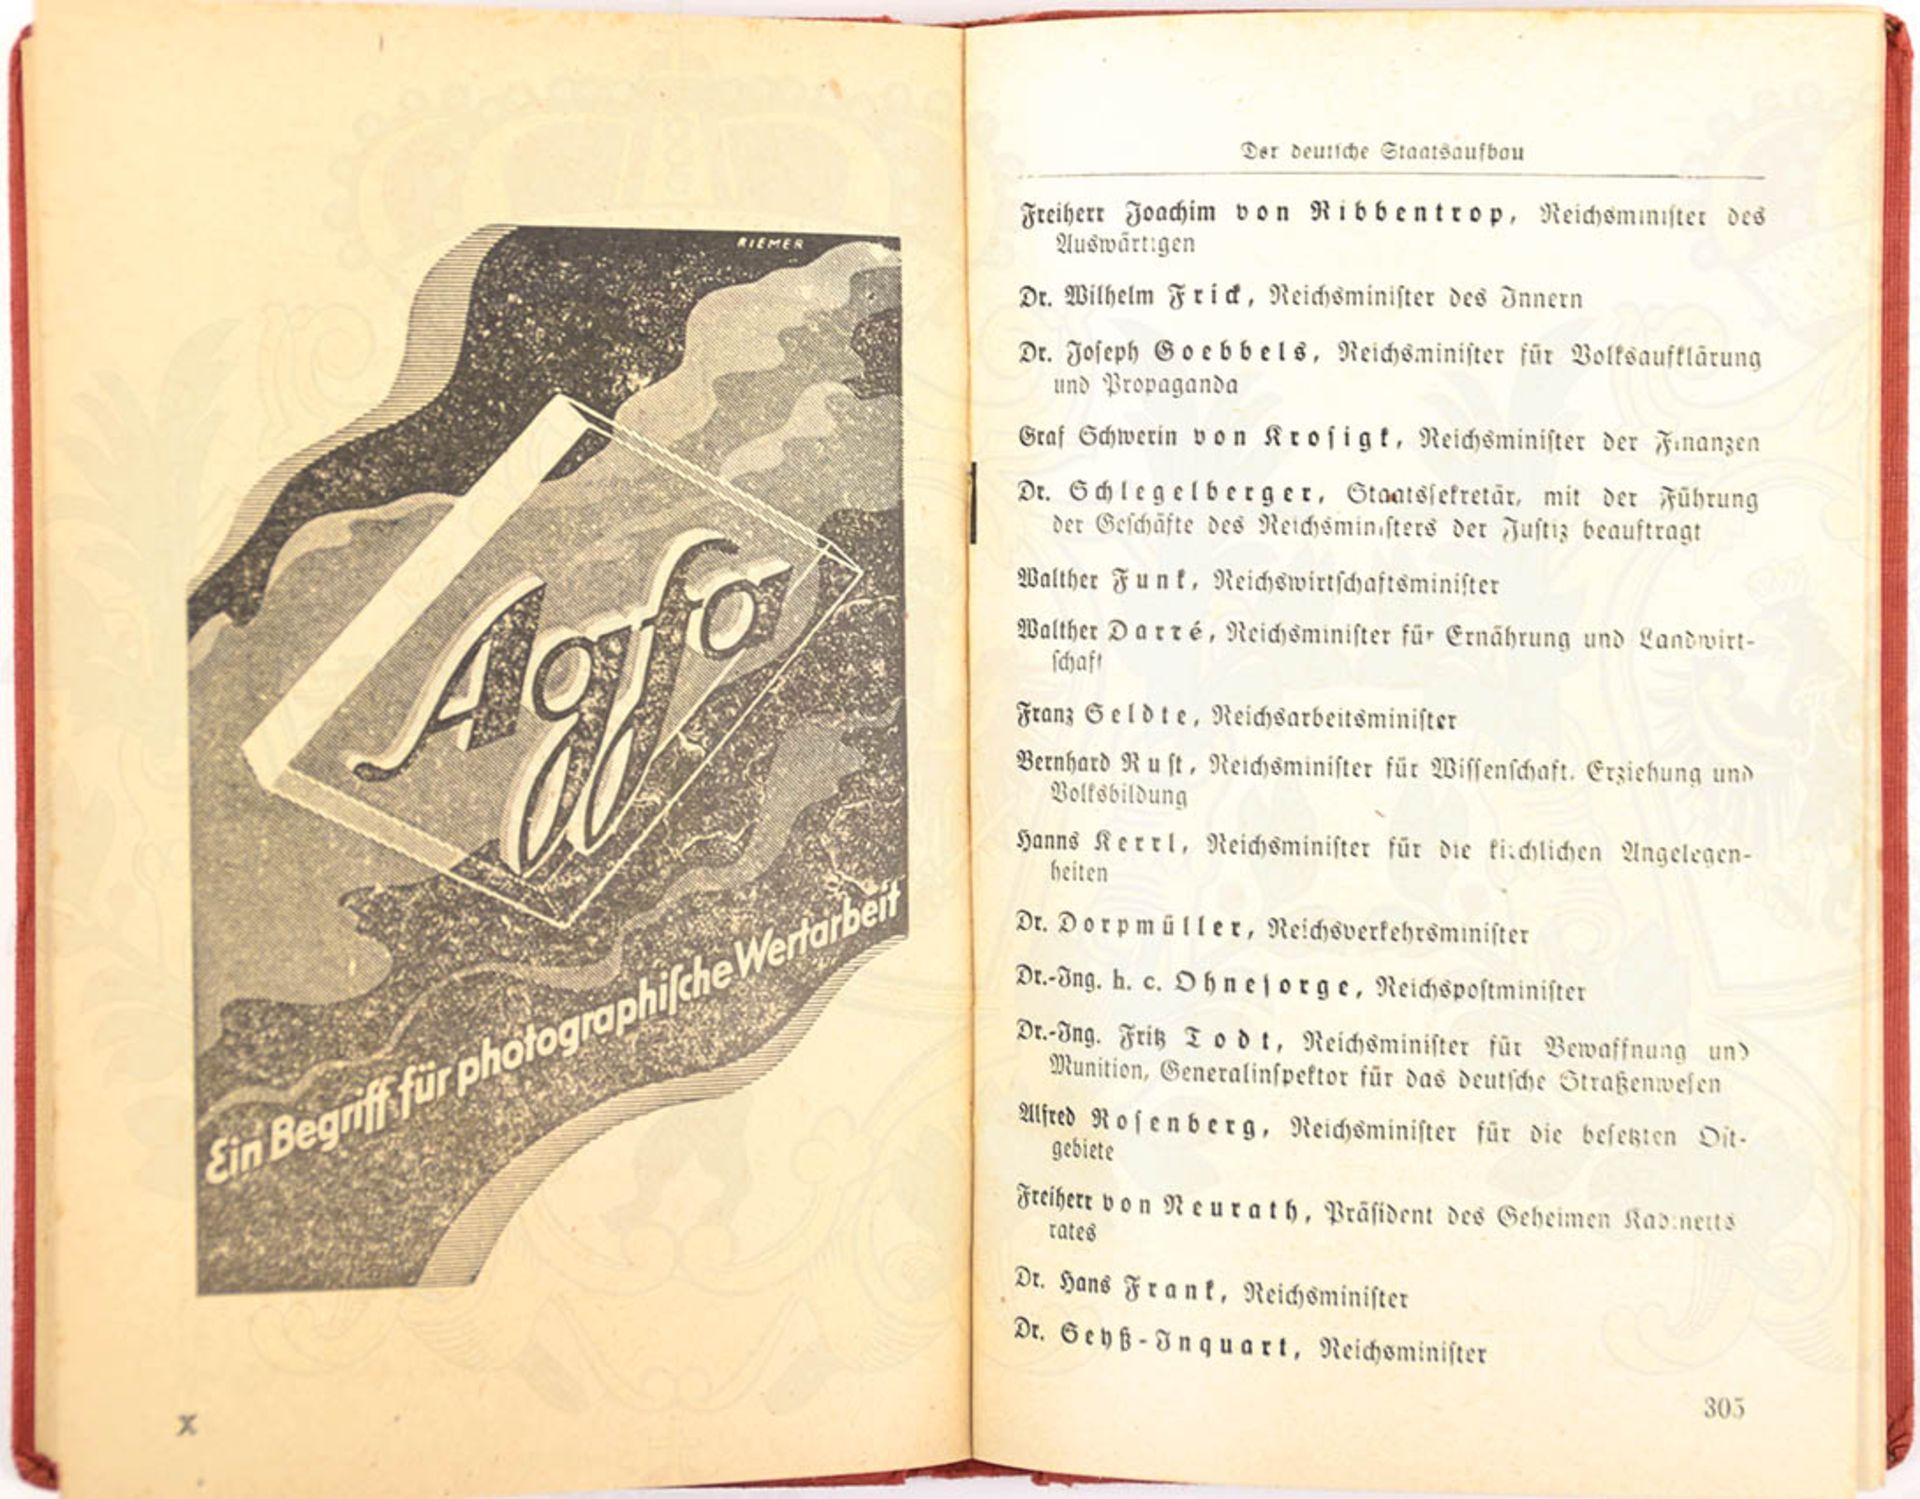 NATIONALSOZIALISTISCHES JAHRBUCH 1942, Zentralverlag der NSDAP München, 504 S., Abb., Ehrentafel, - Image 2 of 2